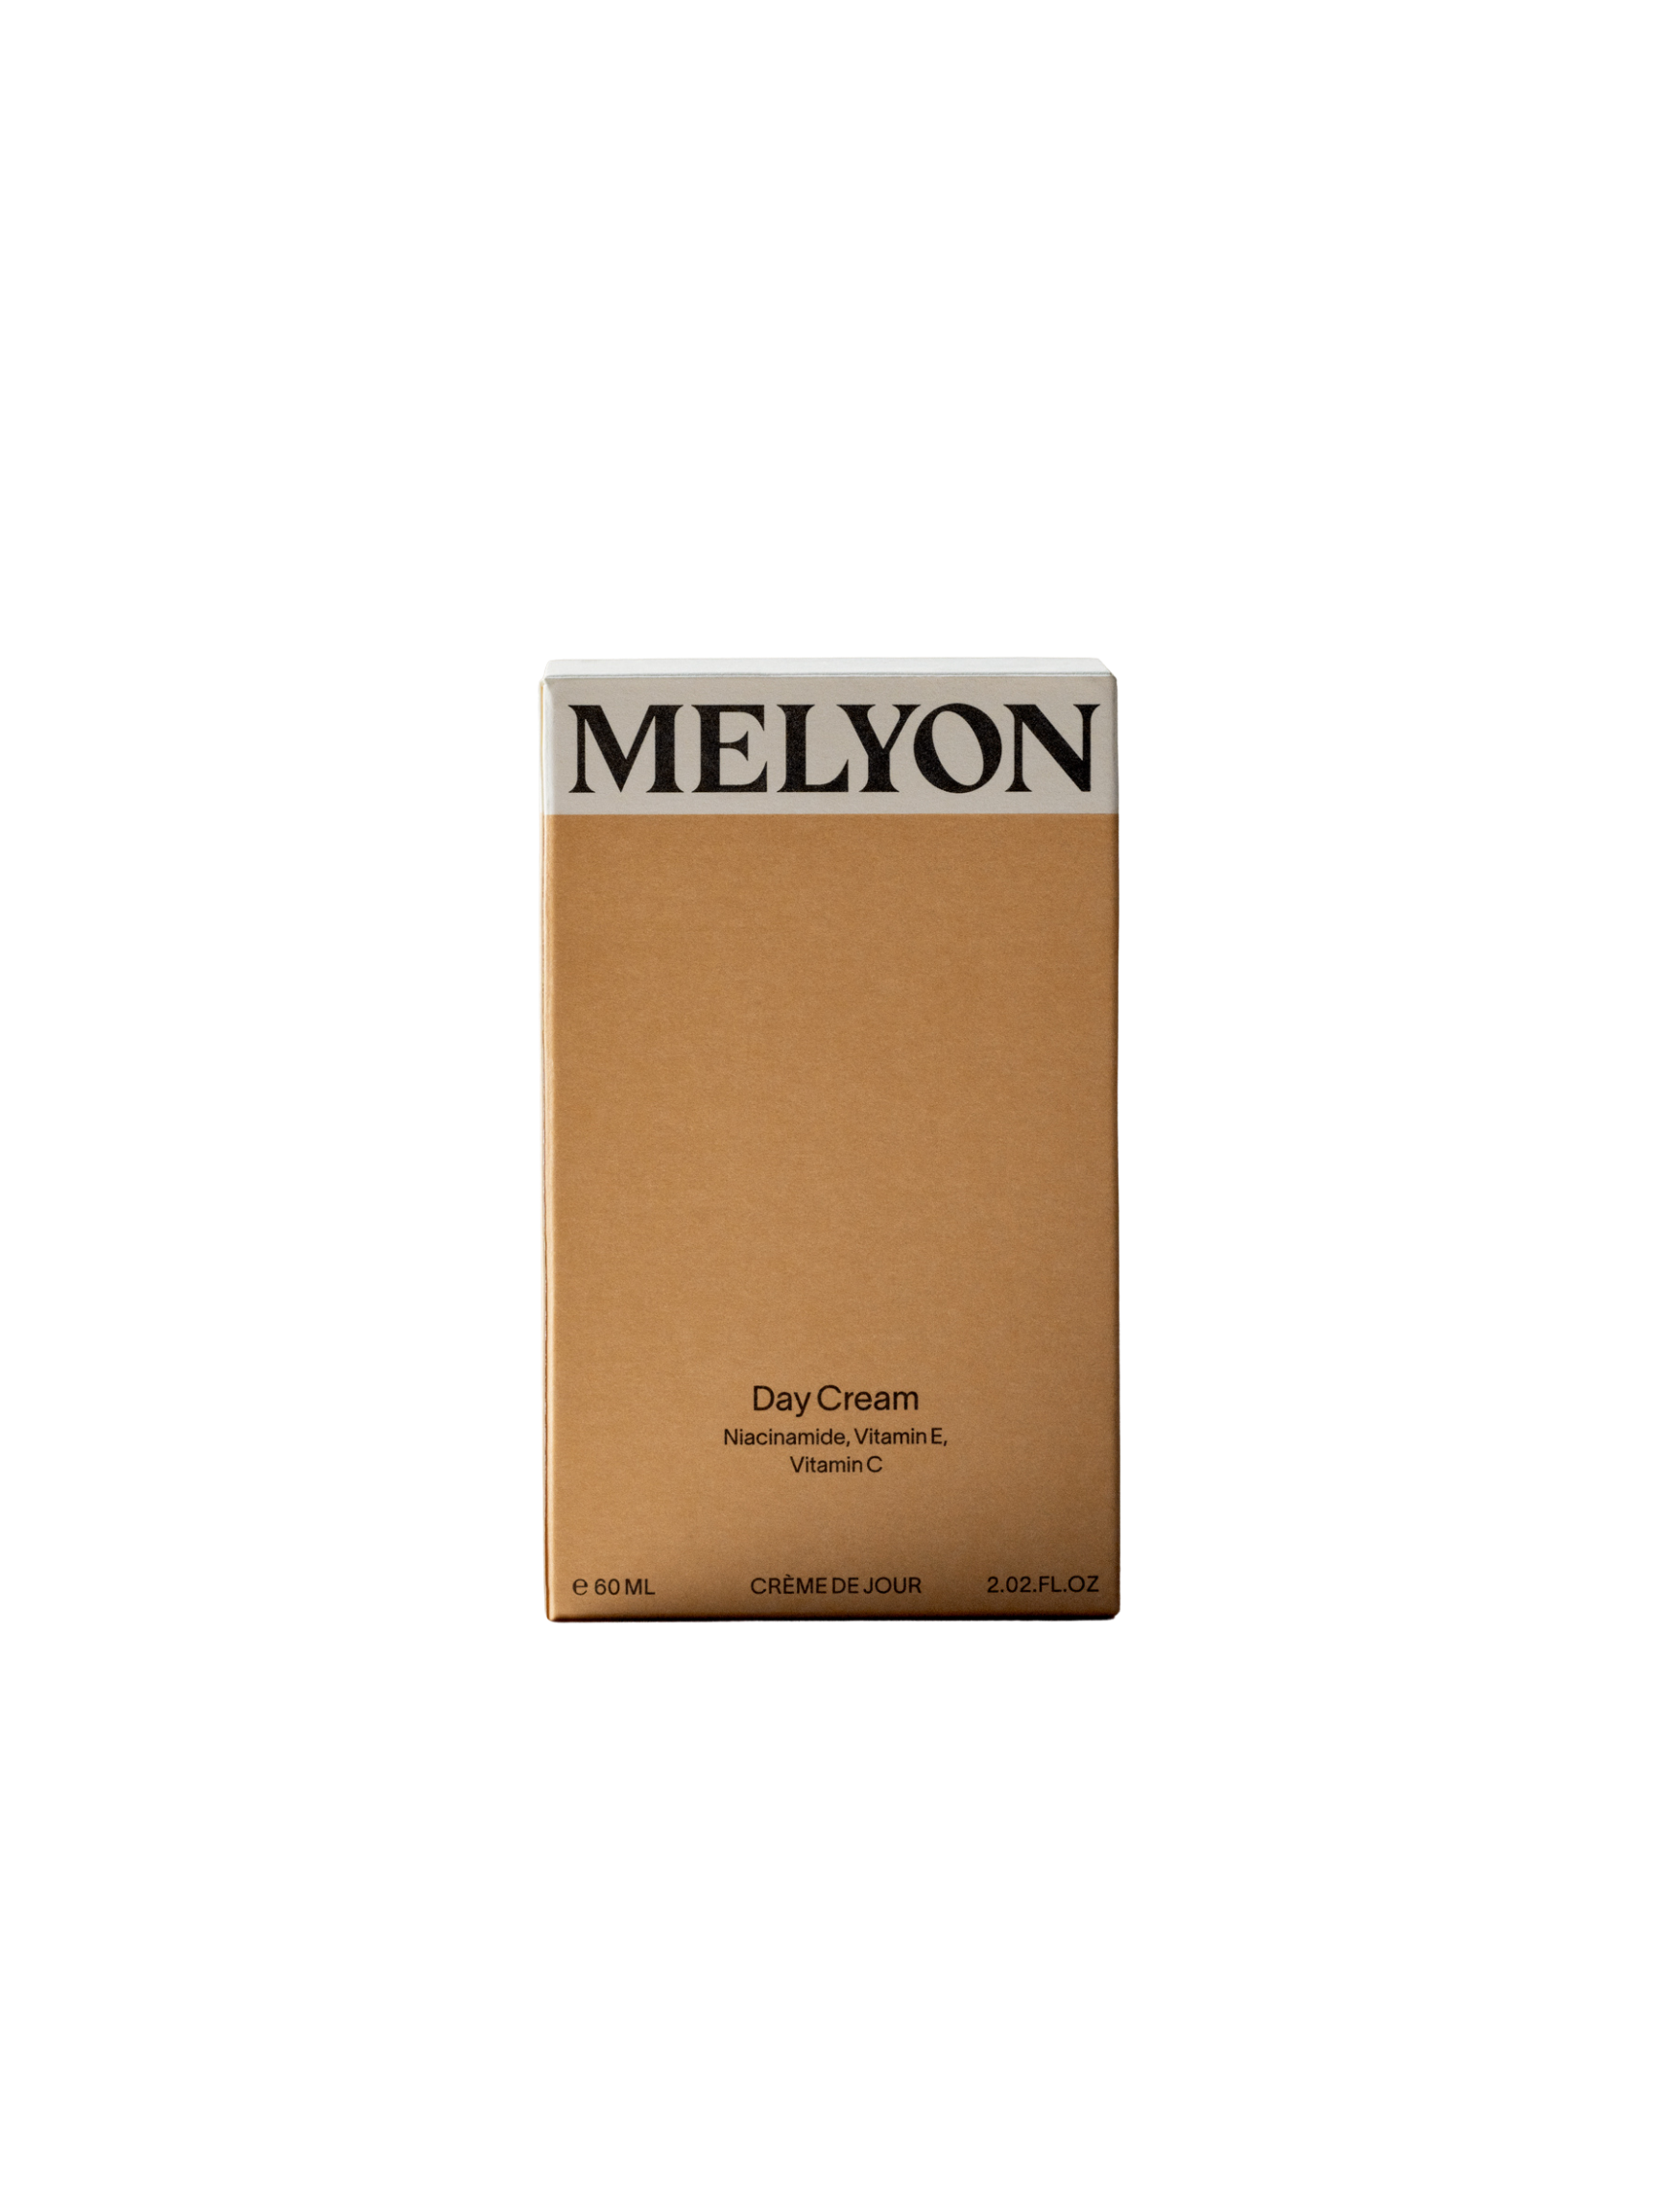 MELYON Day Cream 60mL, Facial cream, Niacinamide, MELYON, PourHommies